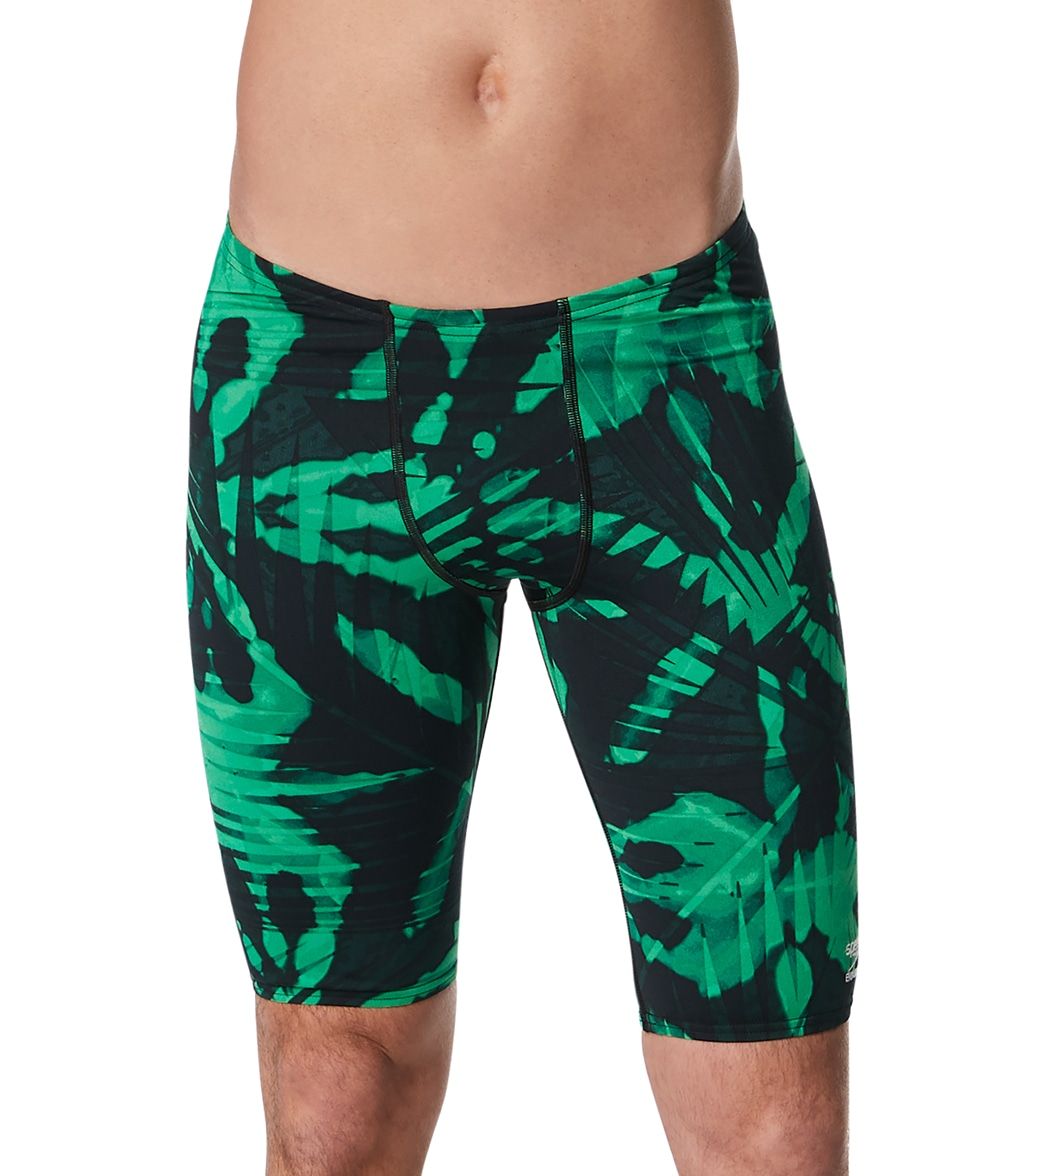 Speedo Men's Reflected Jammer Swimsuit - Green 24 - Swimoutlet.com